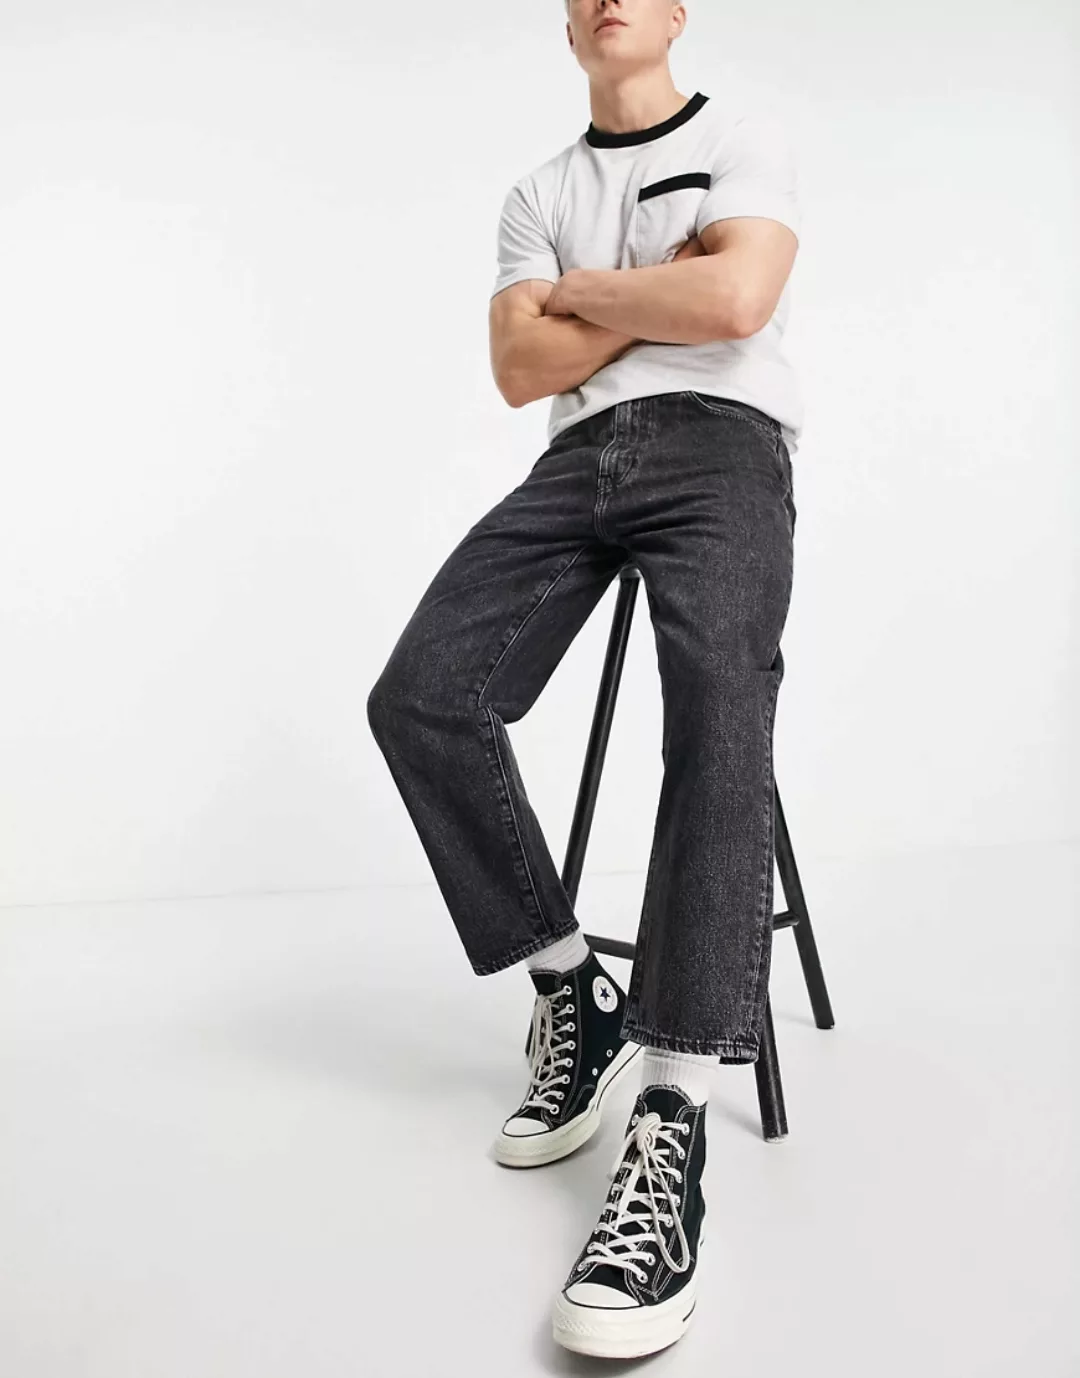 Levi's – Stay Loose – Schmal zulaufende Jeans mit kurzem Schnitt in schwarz günstig online kaufen